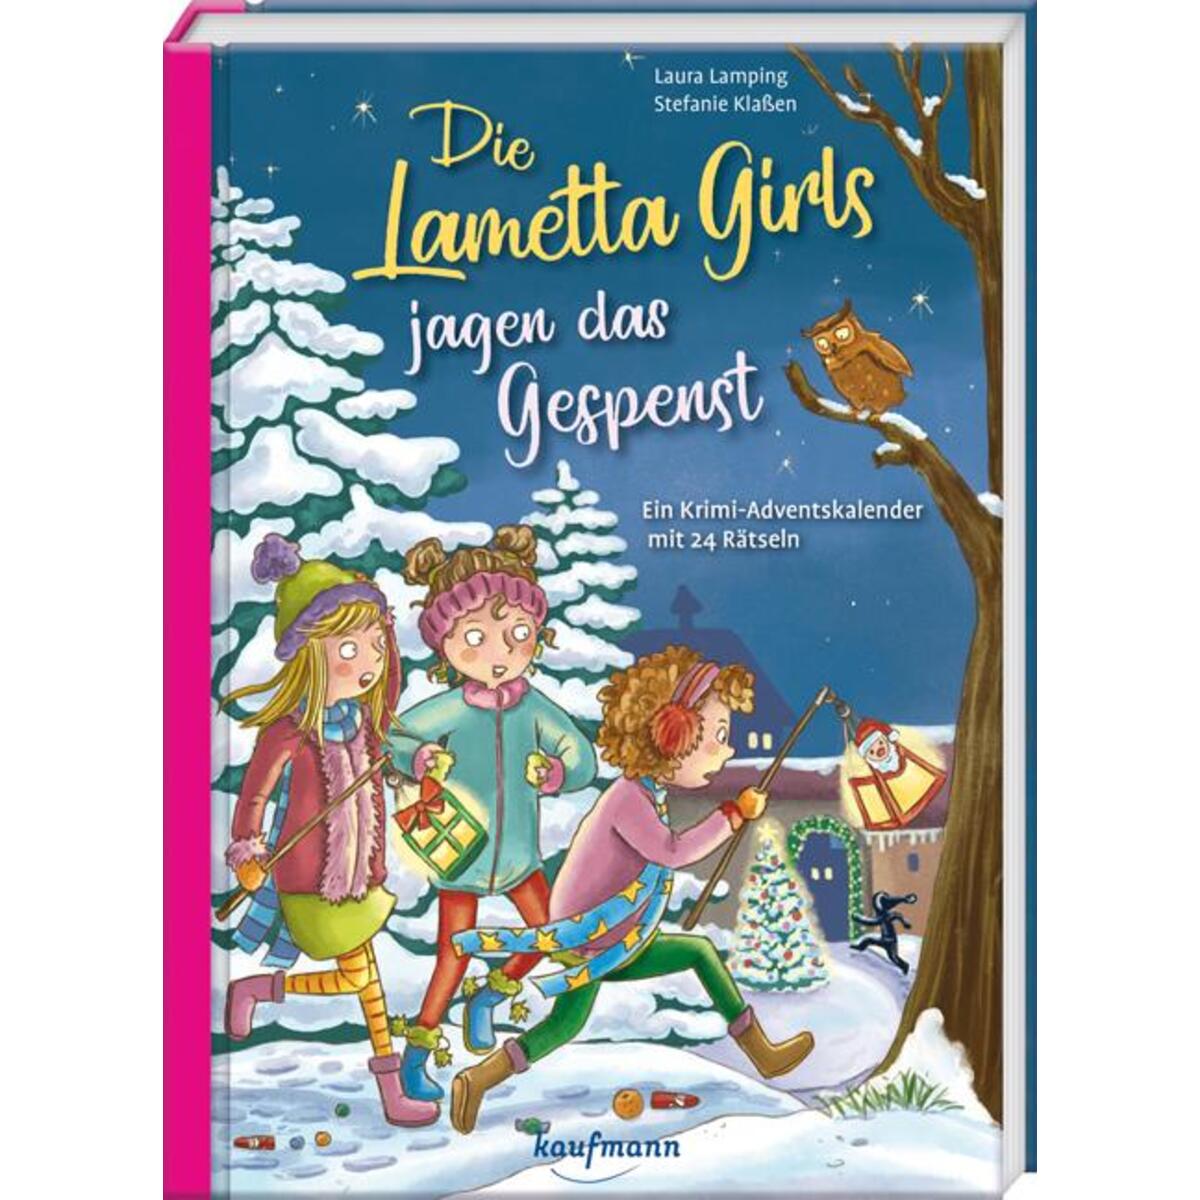 Die Lametta-Girls jagen das Gespenst von Kaufmann Ernst Vlg GmbH